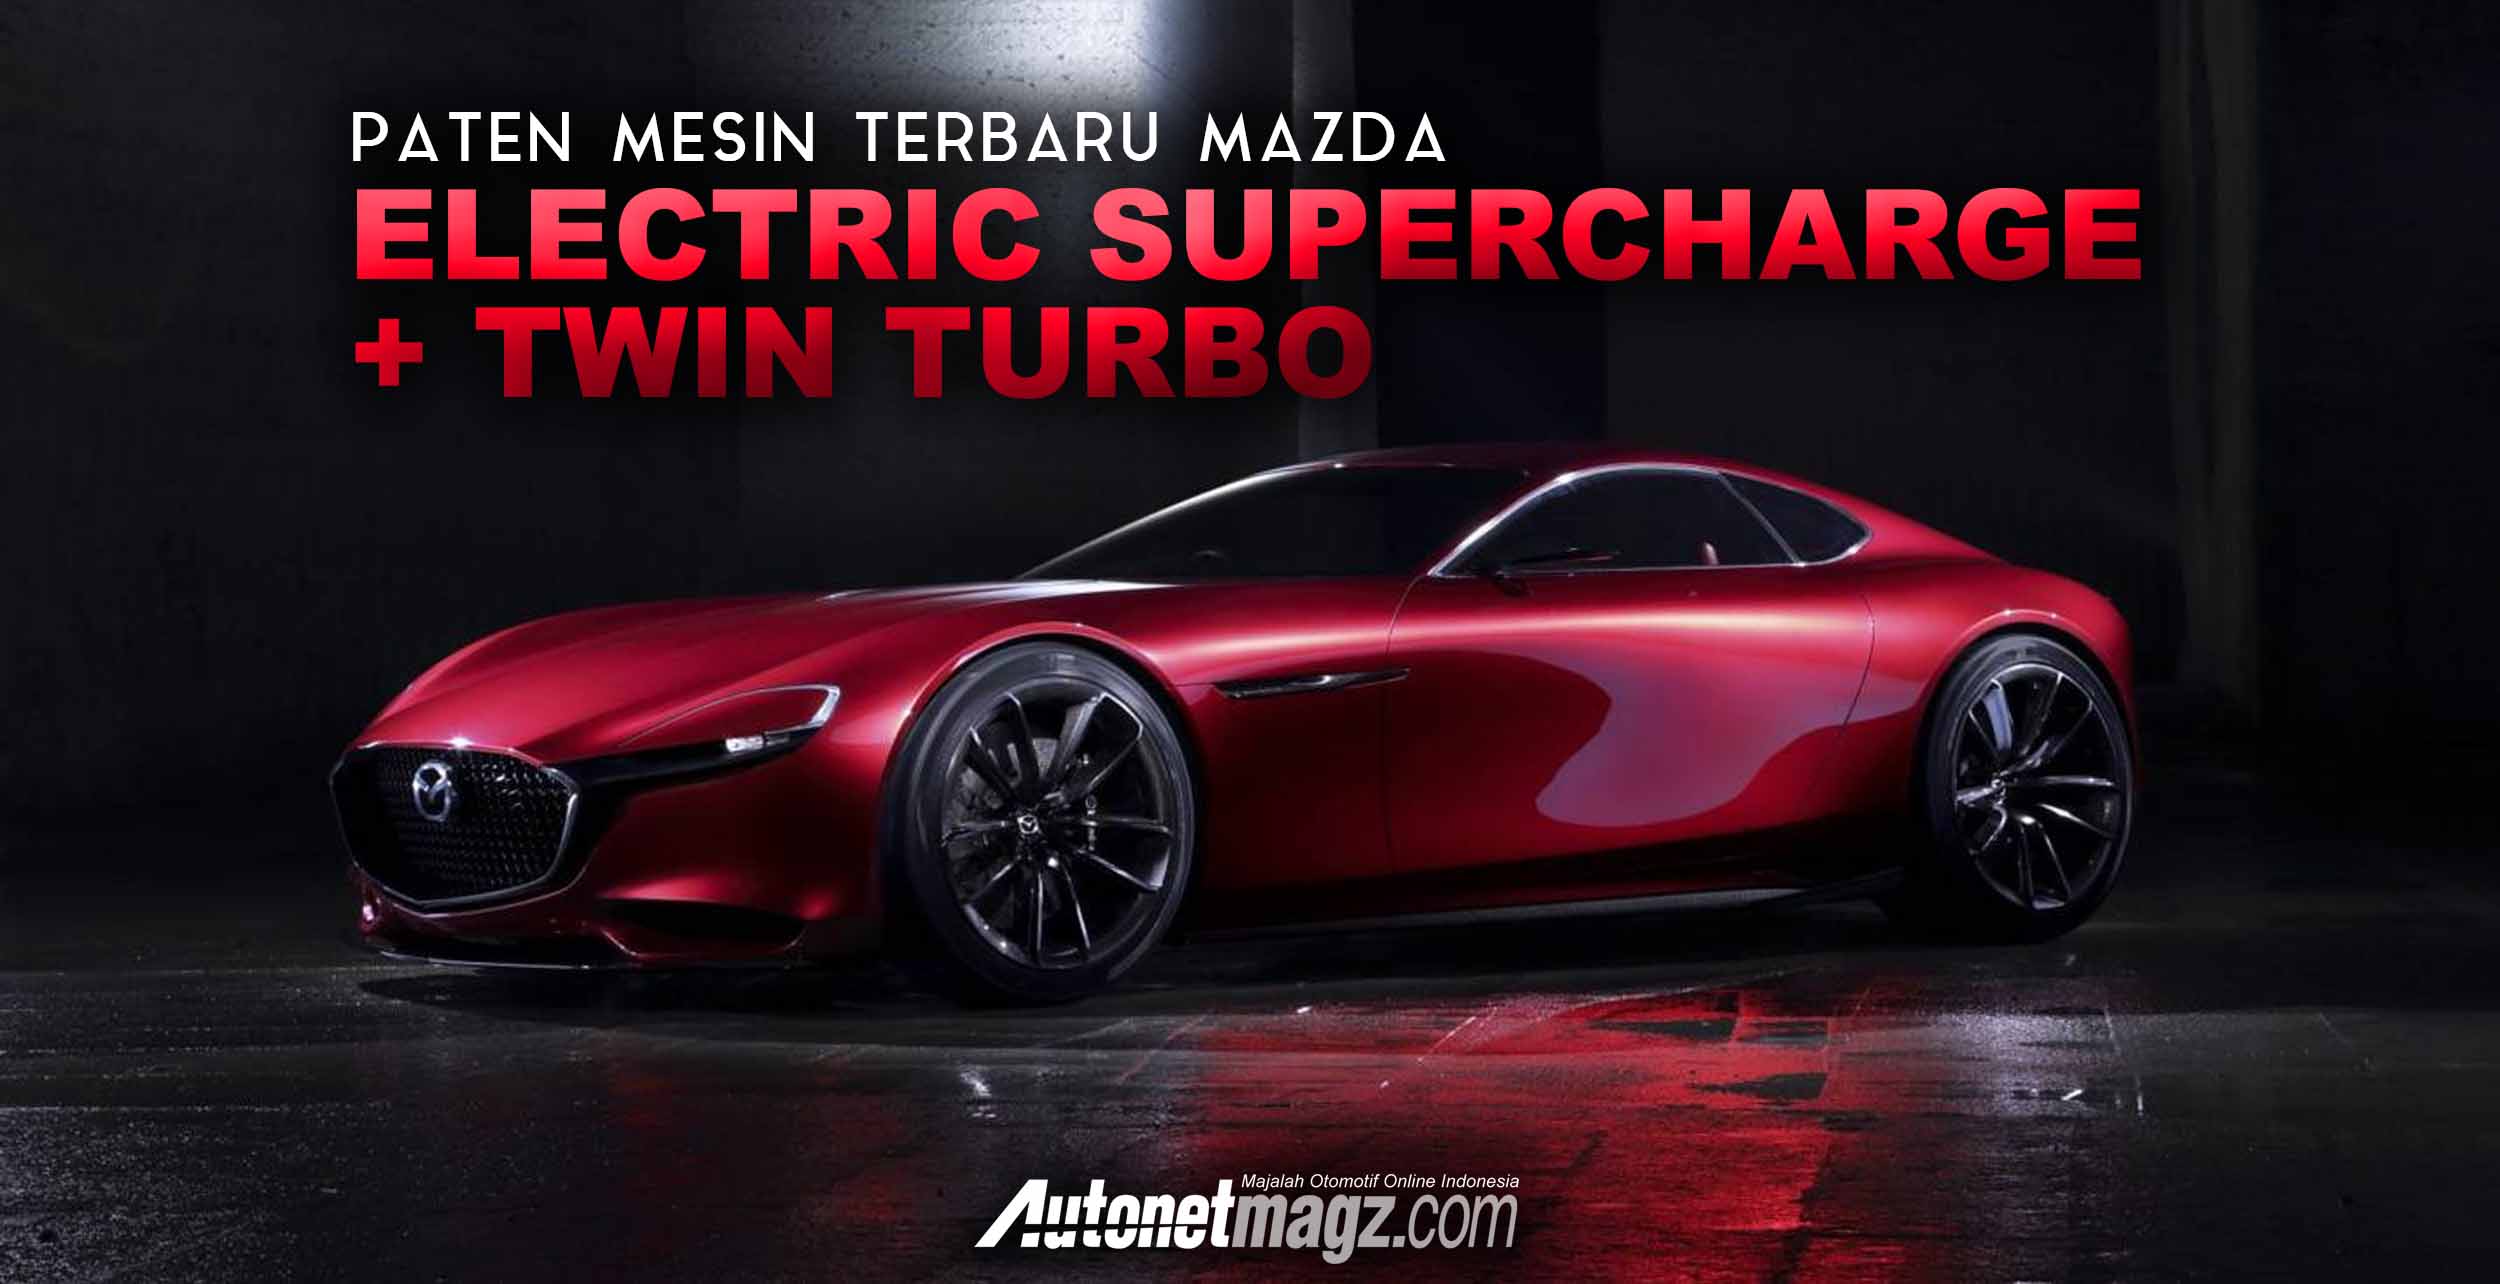 Berita, Paten mesin baru mazda cover: Paten Mesin Twin Turbo Dengan Supercharger Listrik Terbaru Mazda